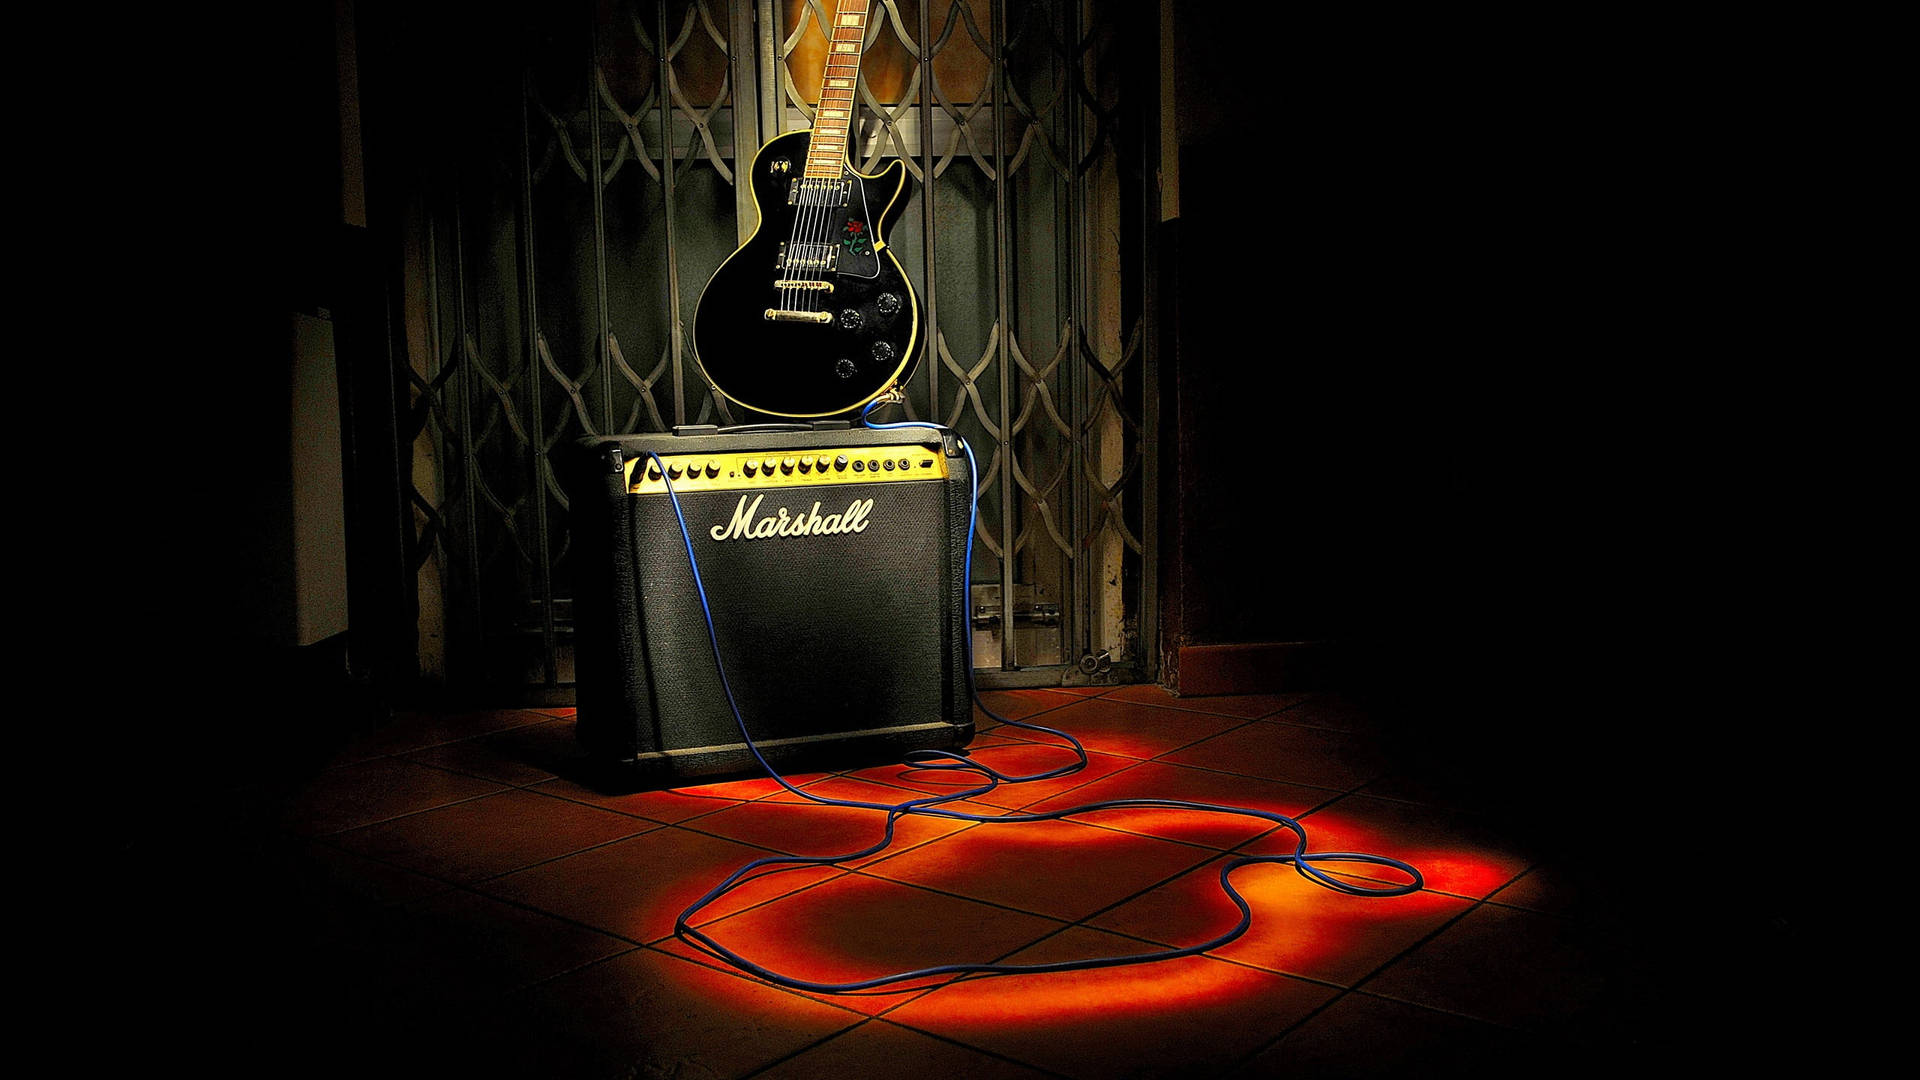 Amplificadormarshall Y Guitarra Digital. Fondo de pantalla